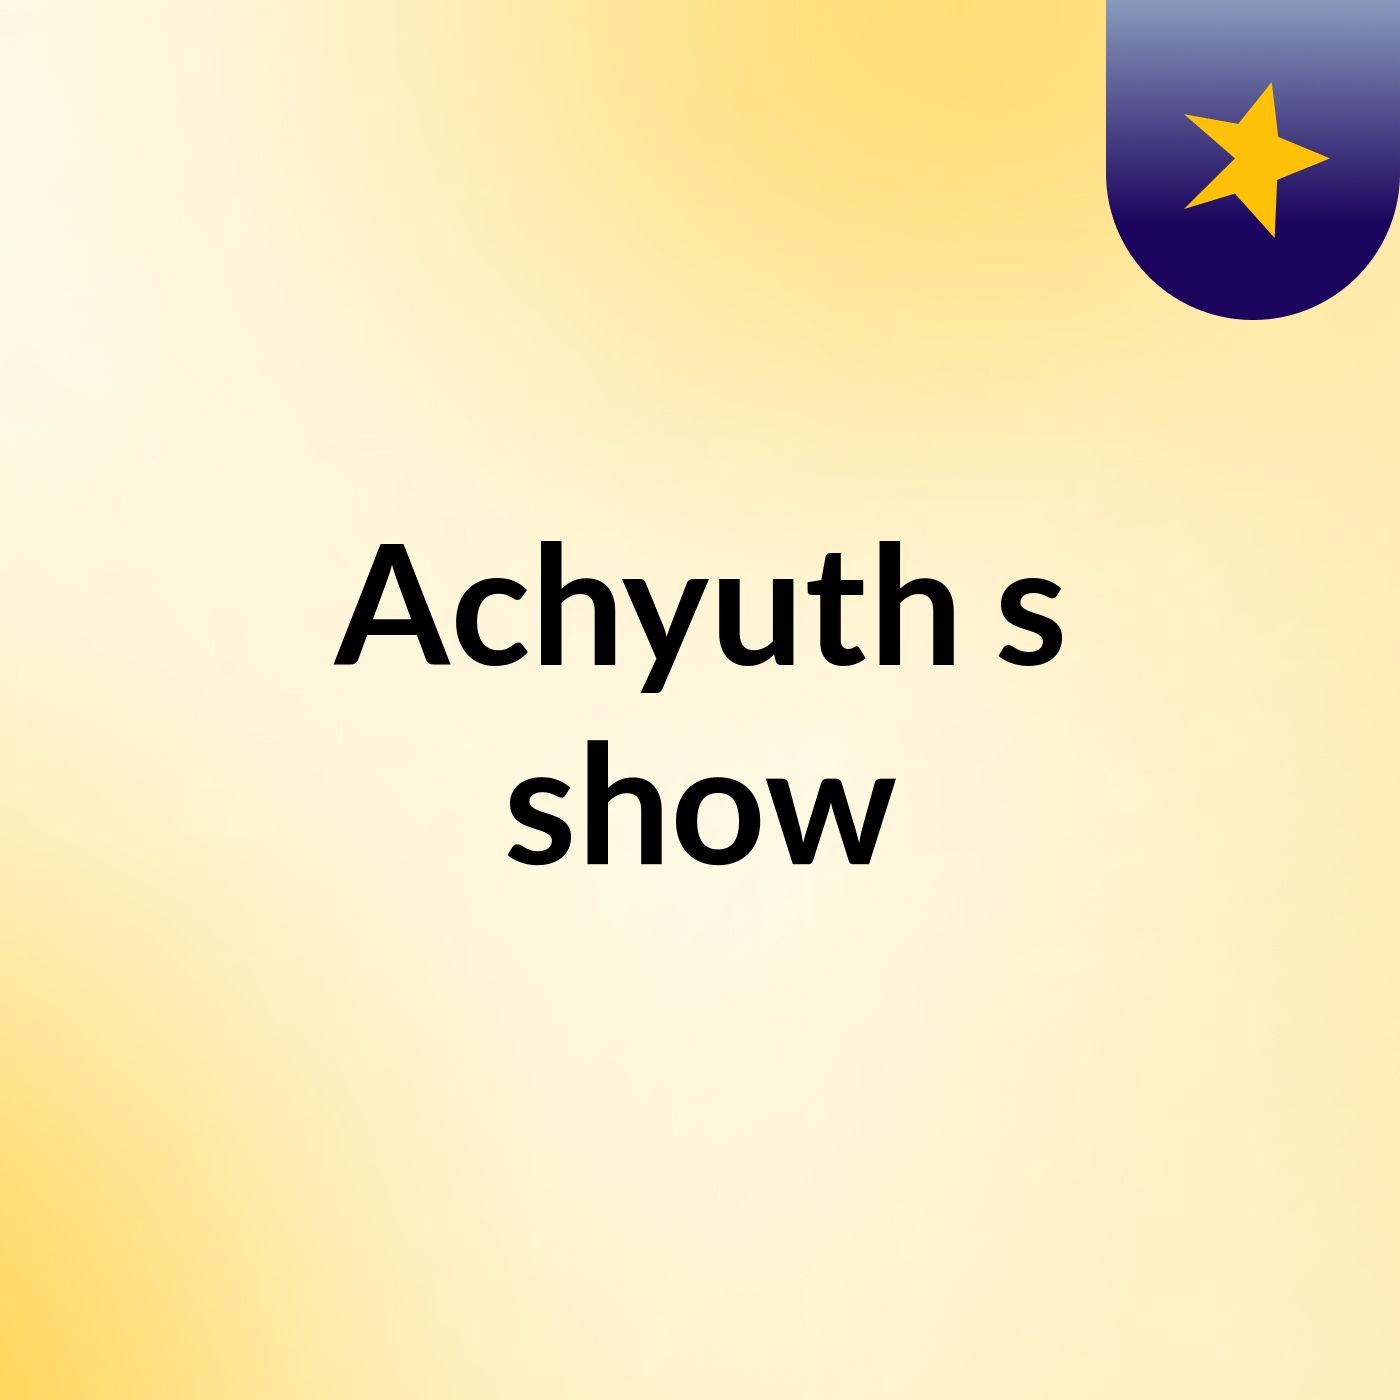 Achyuth's show